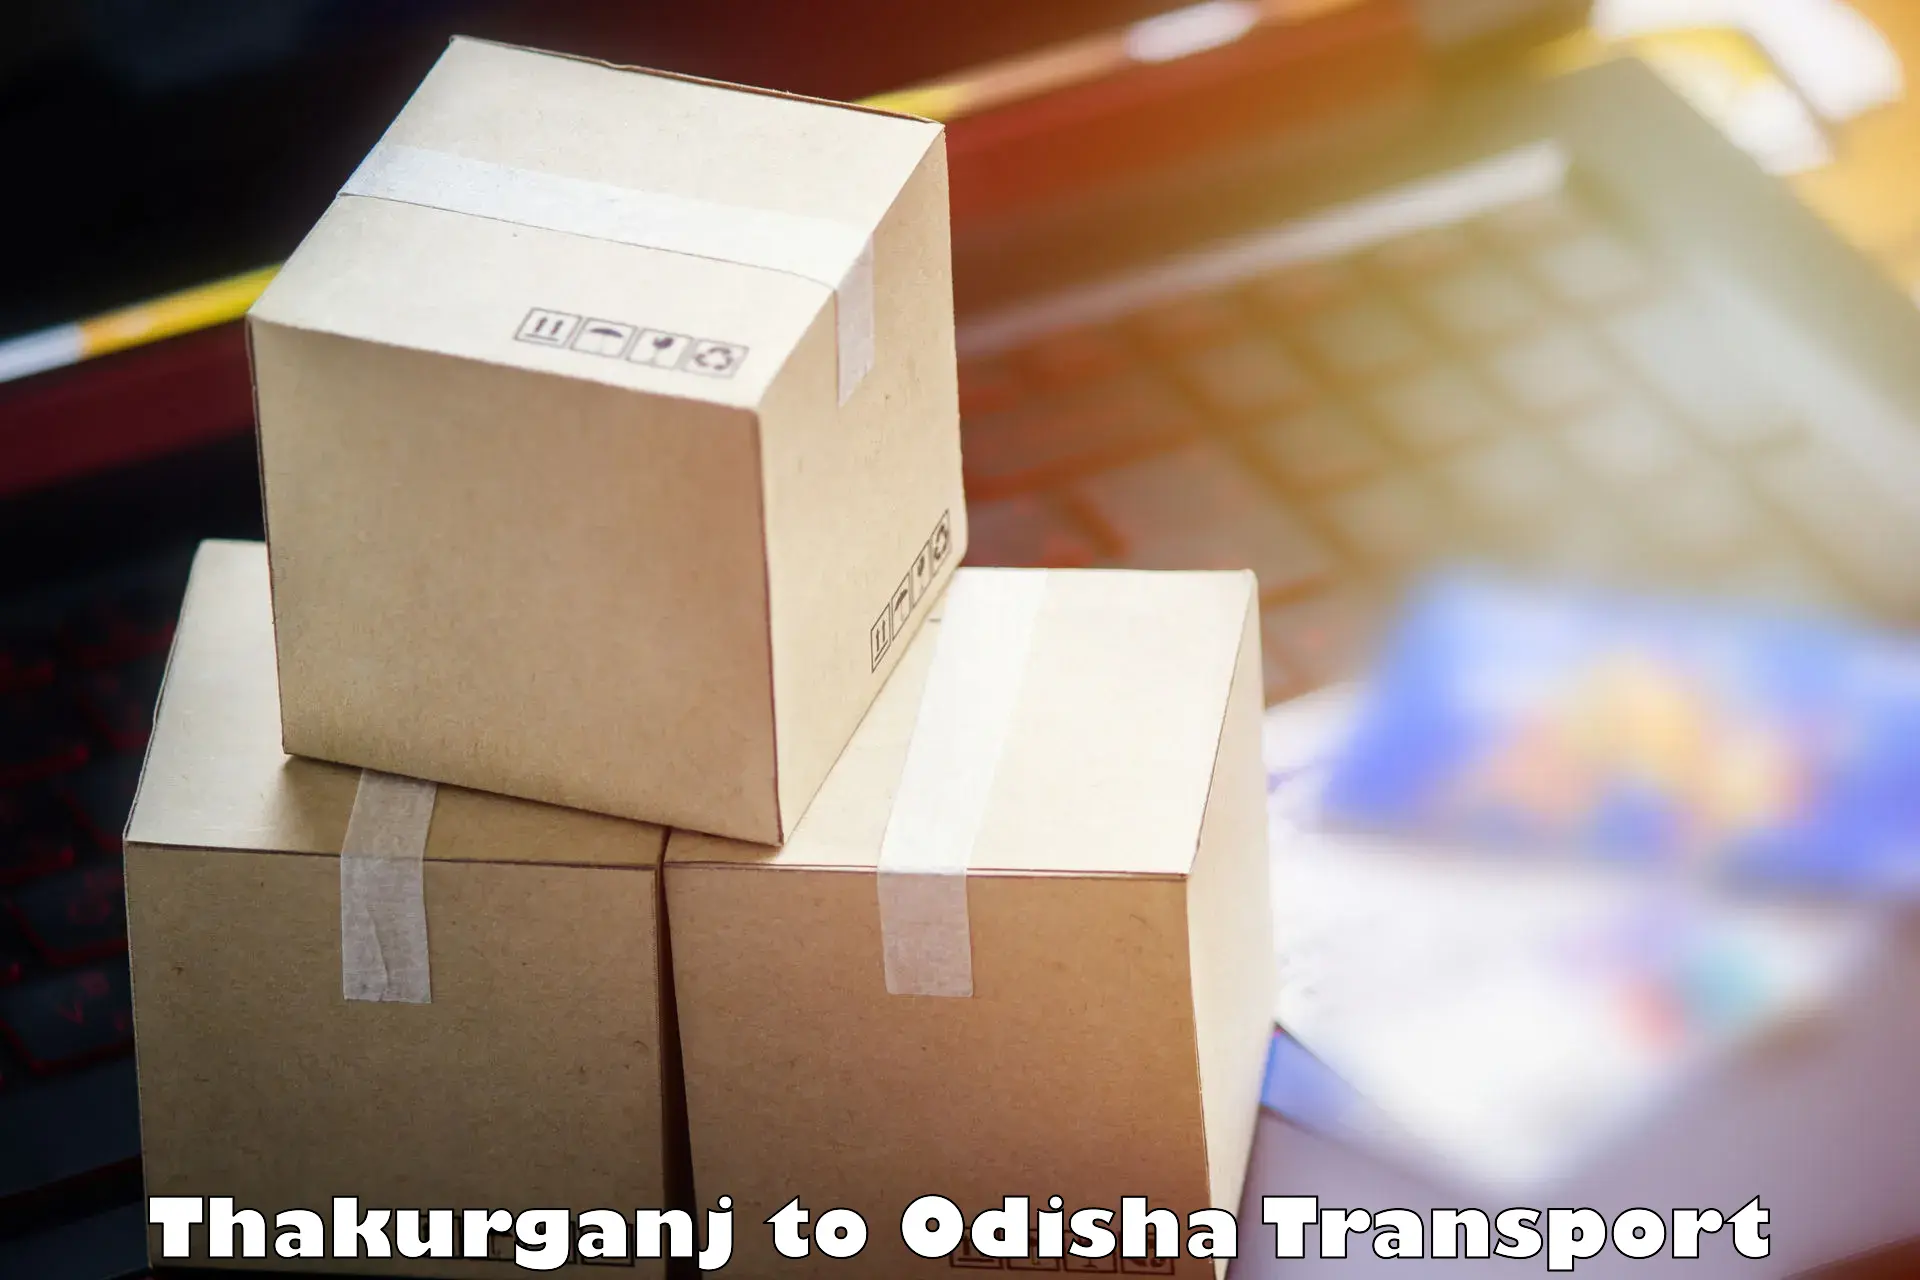 Cargo transport services Thakurganj to Gopalapur Ganjam